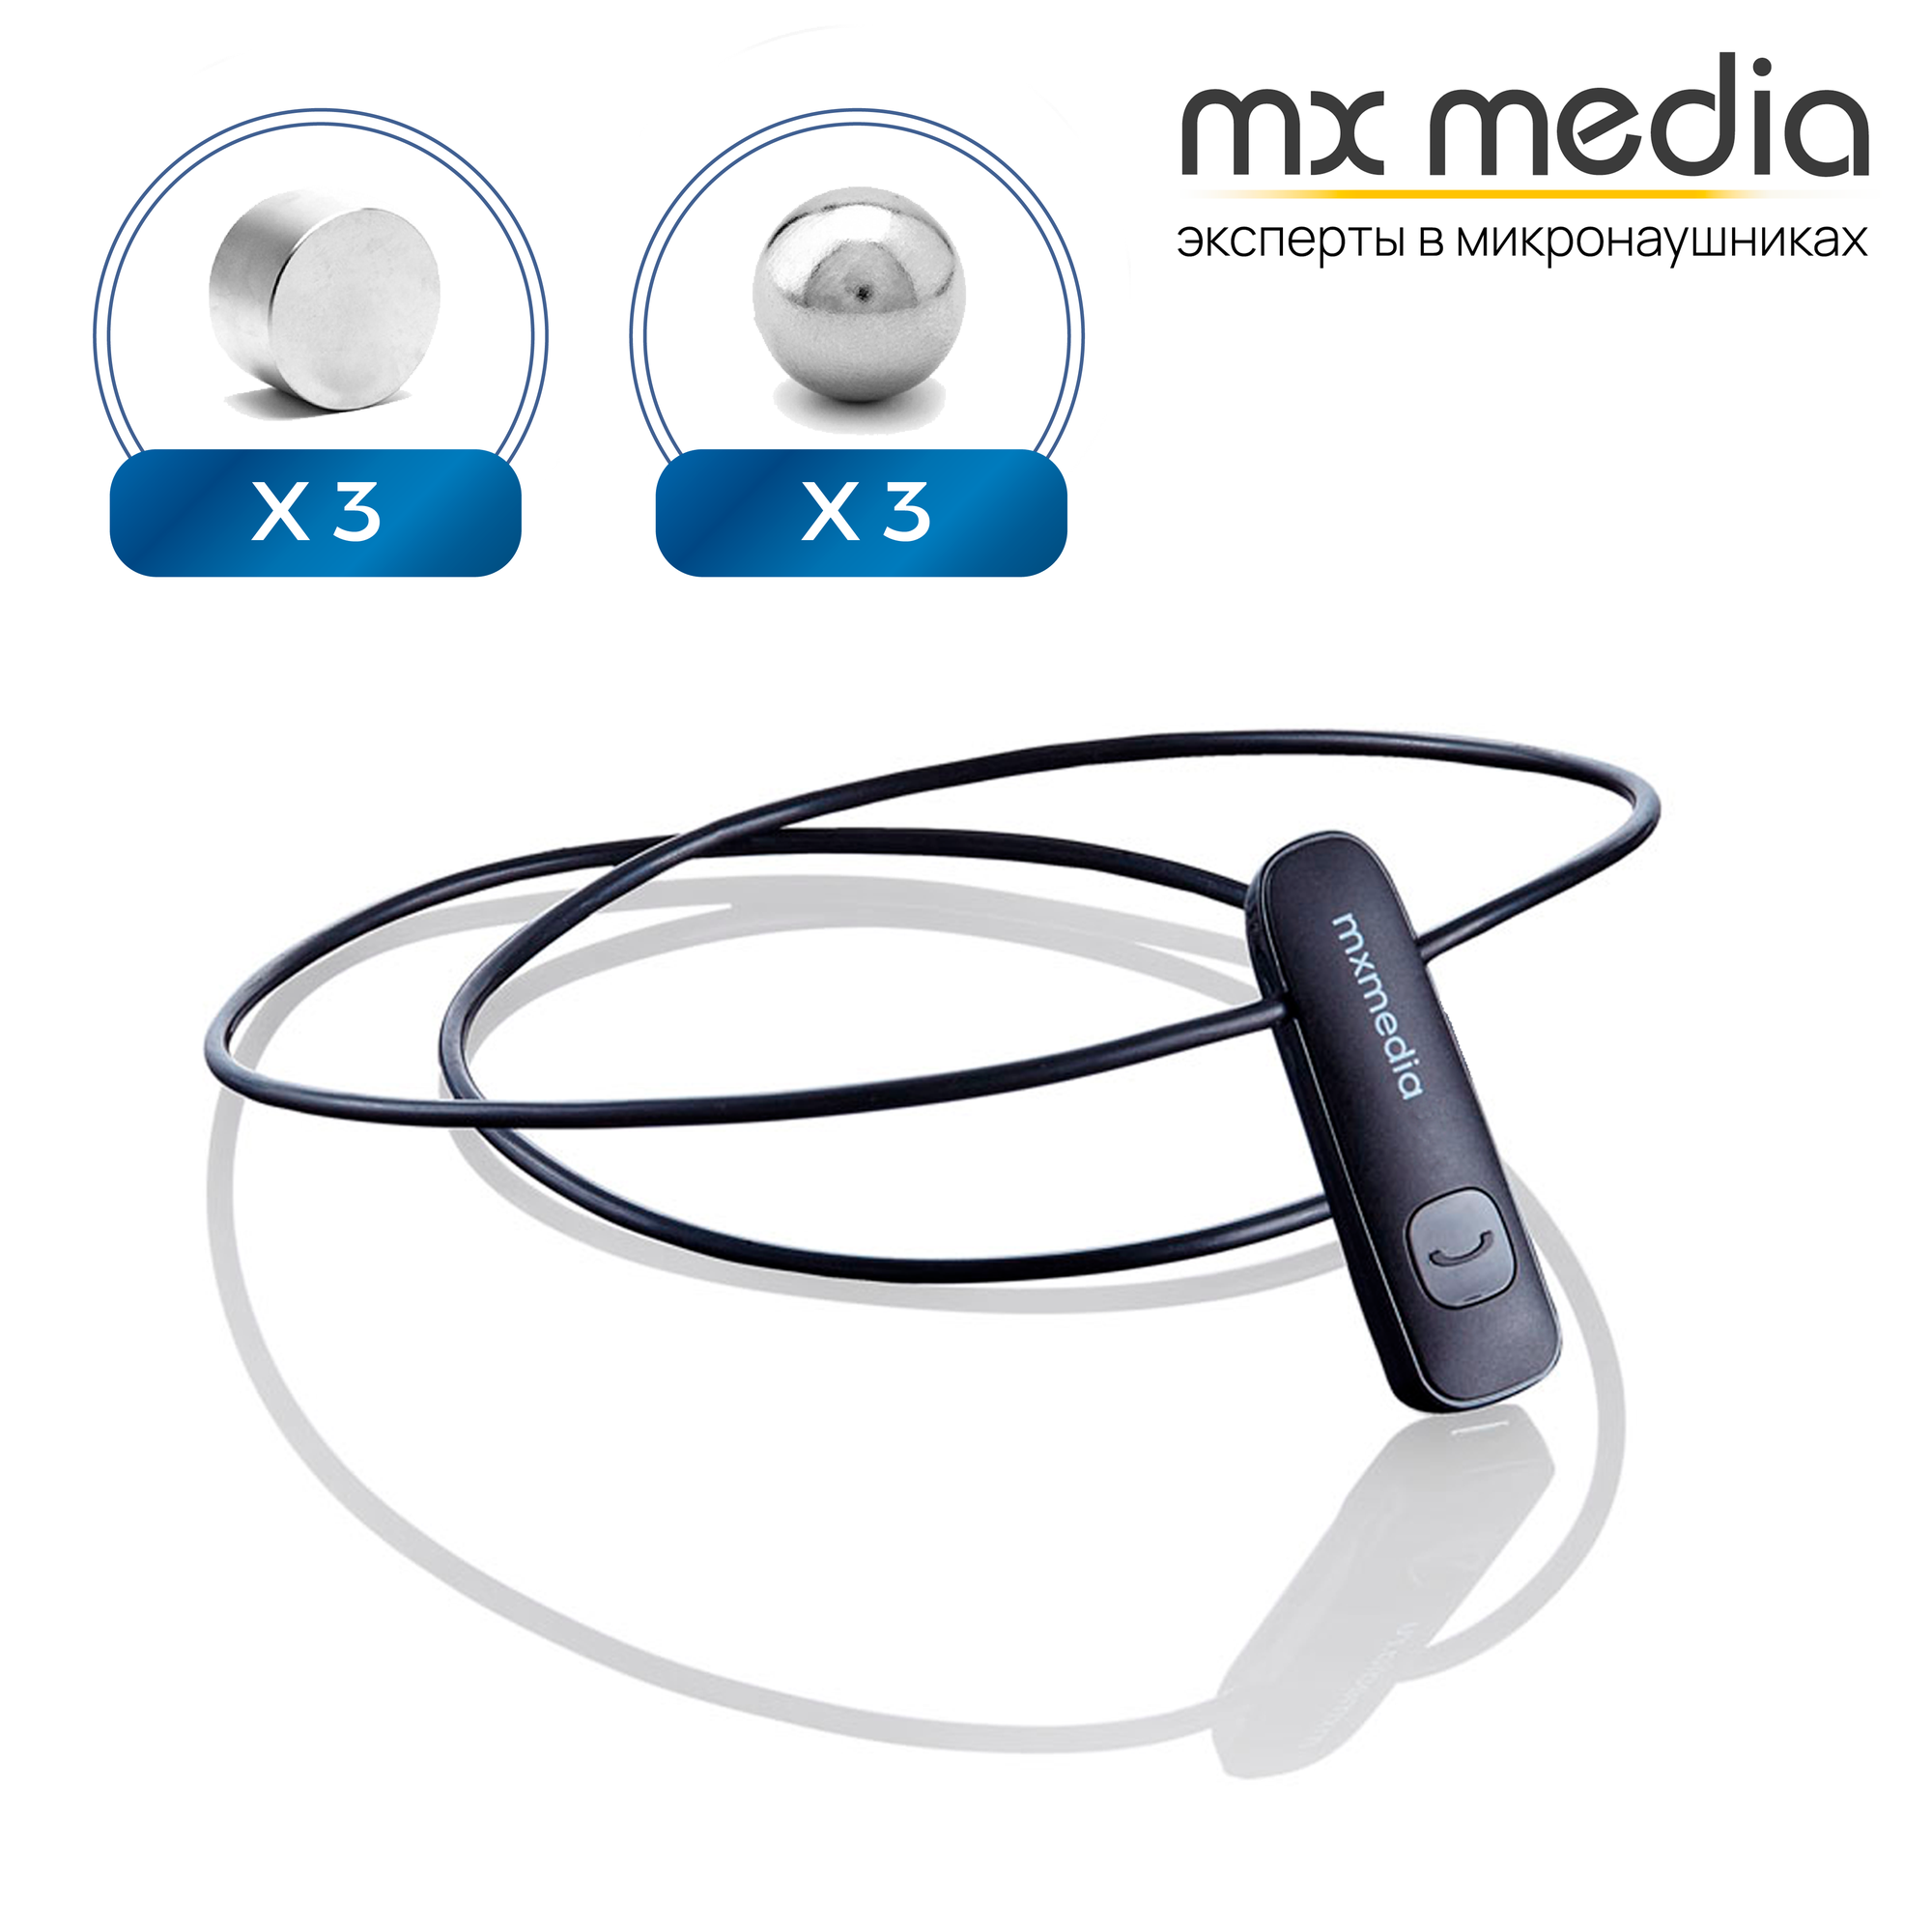 Микронаушник Mxmedia магнитный Magnet Bluetooth встроенный микрофон